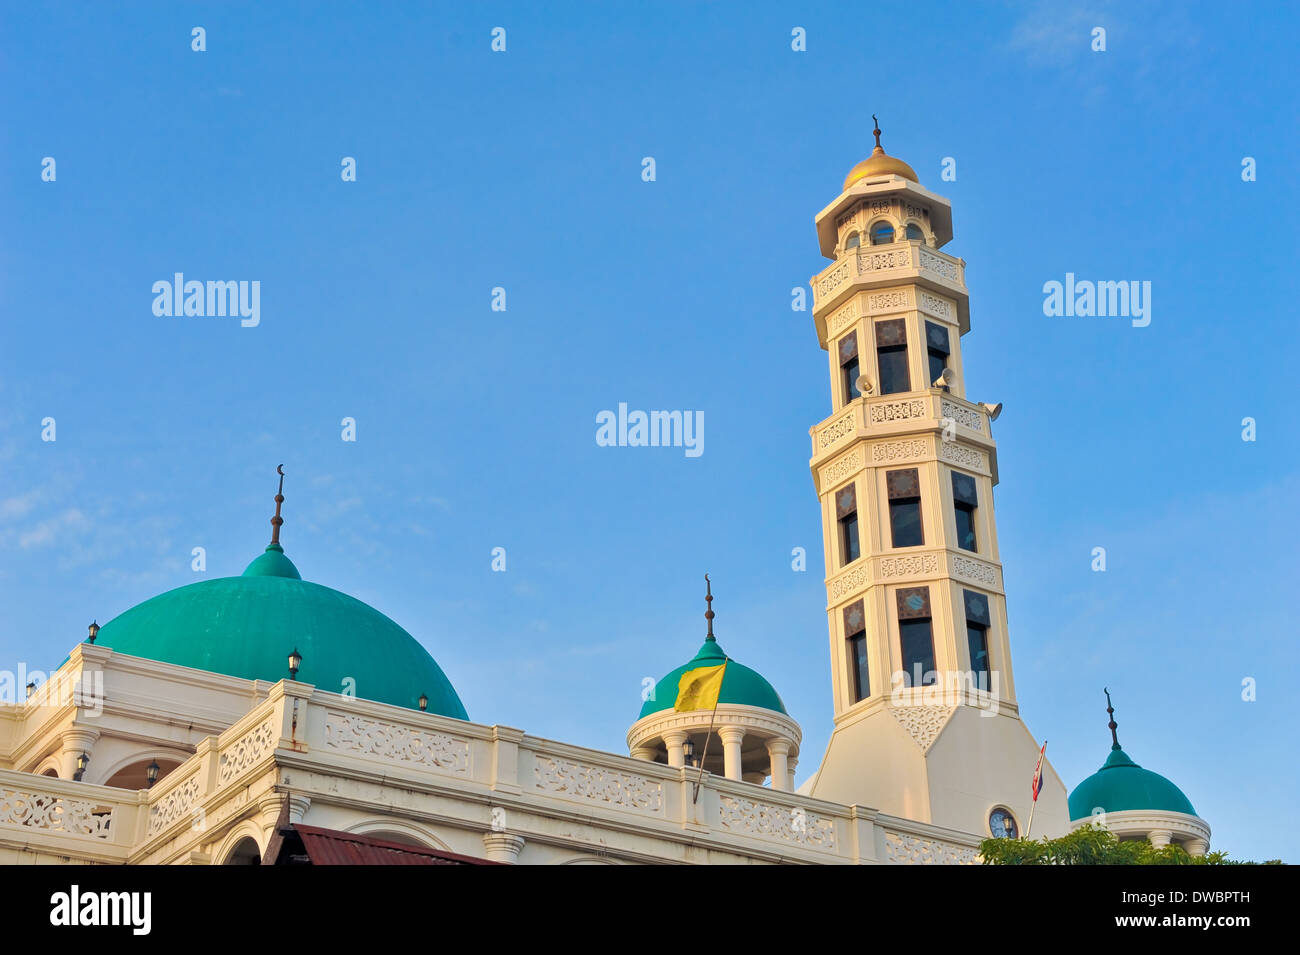 La hermosa mezquita y la paz en Tailandia Foto de stock